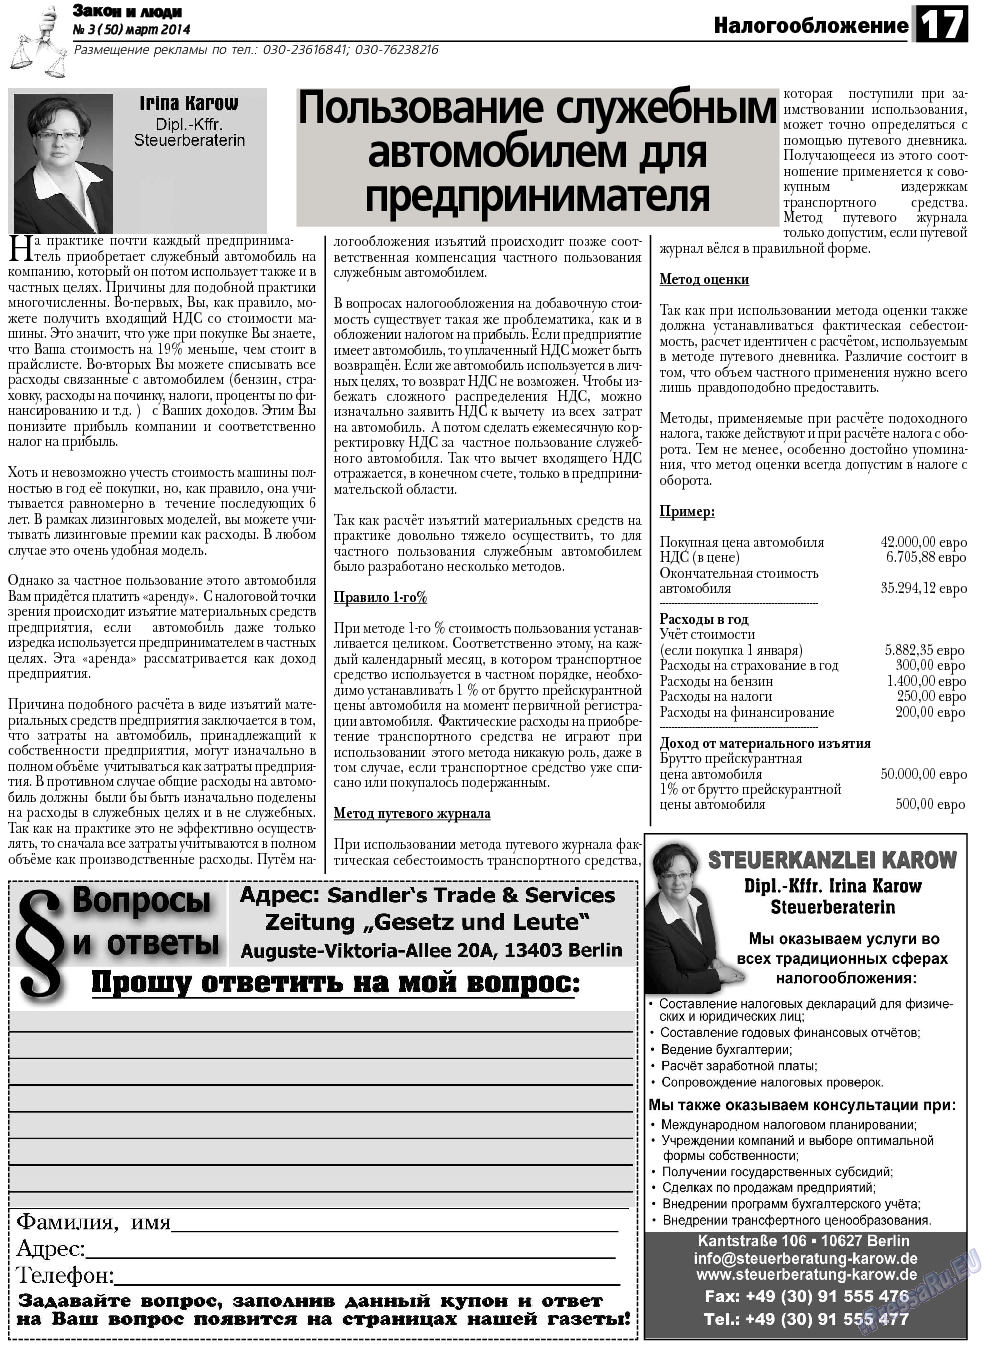 Закон и люди, газета. 2014 №3 стр.17